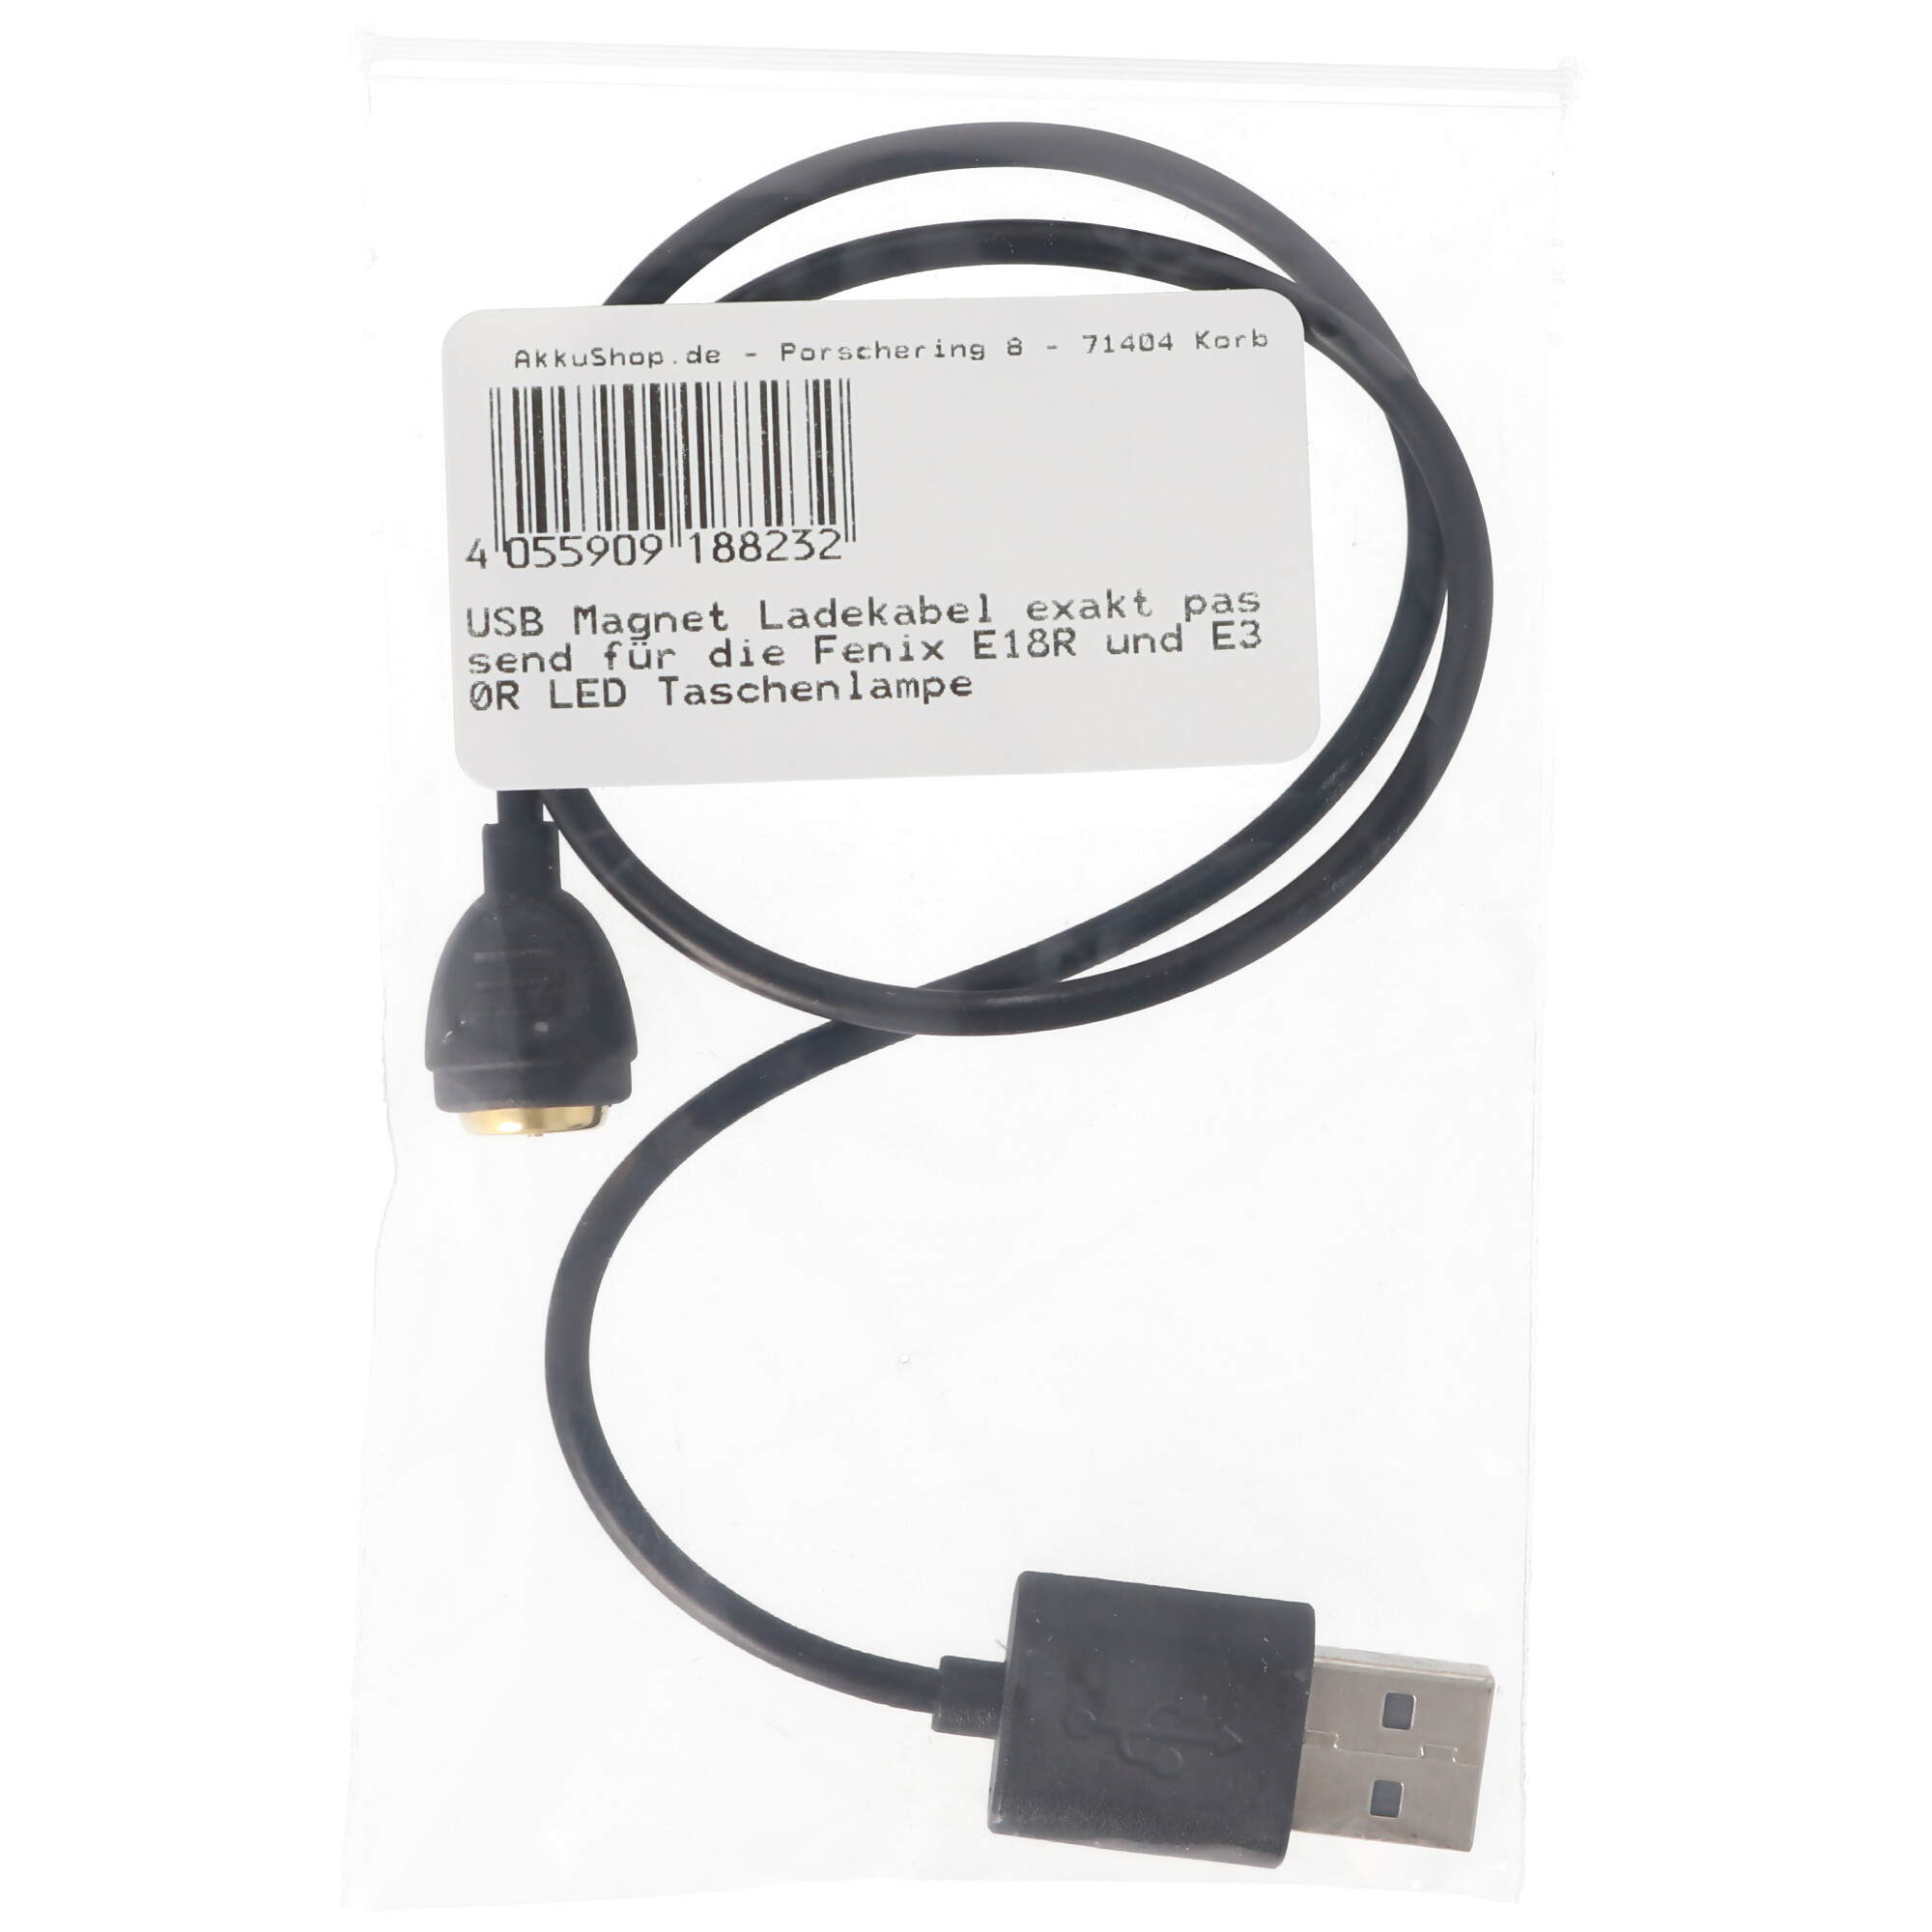 USB Magnet Ladekabel exakt passend für die Fenix E18R und E30R LED Taschenlampe